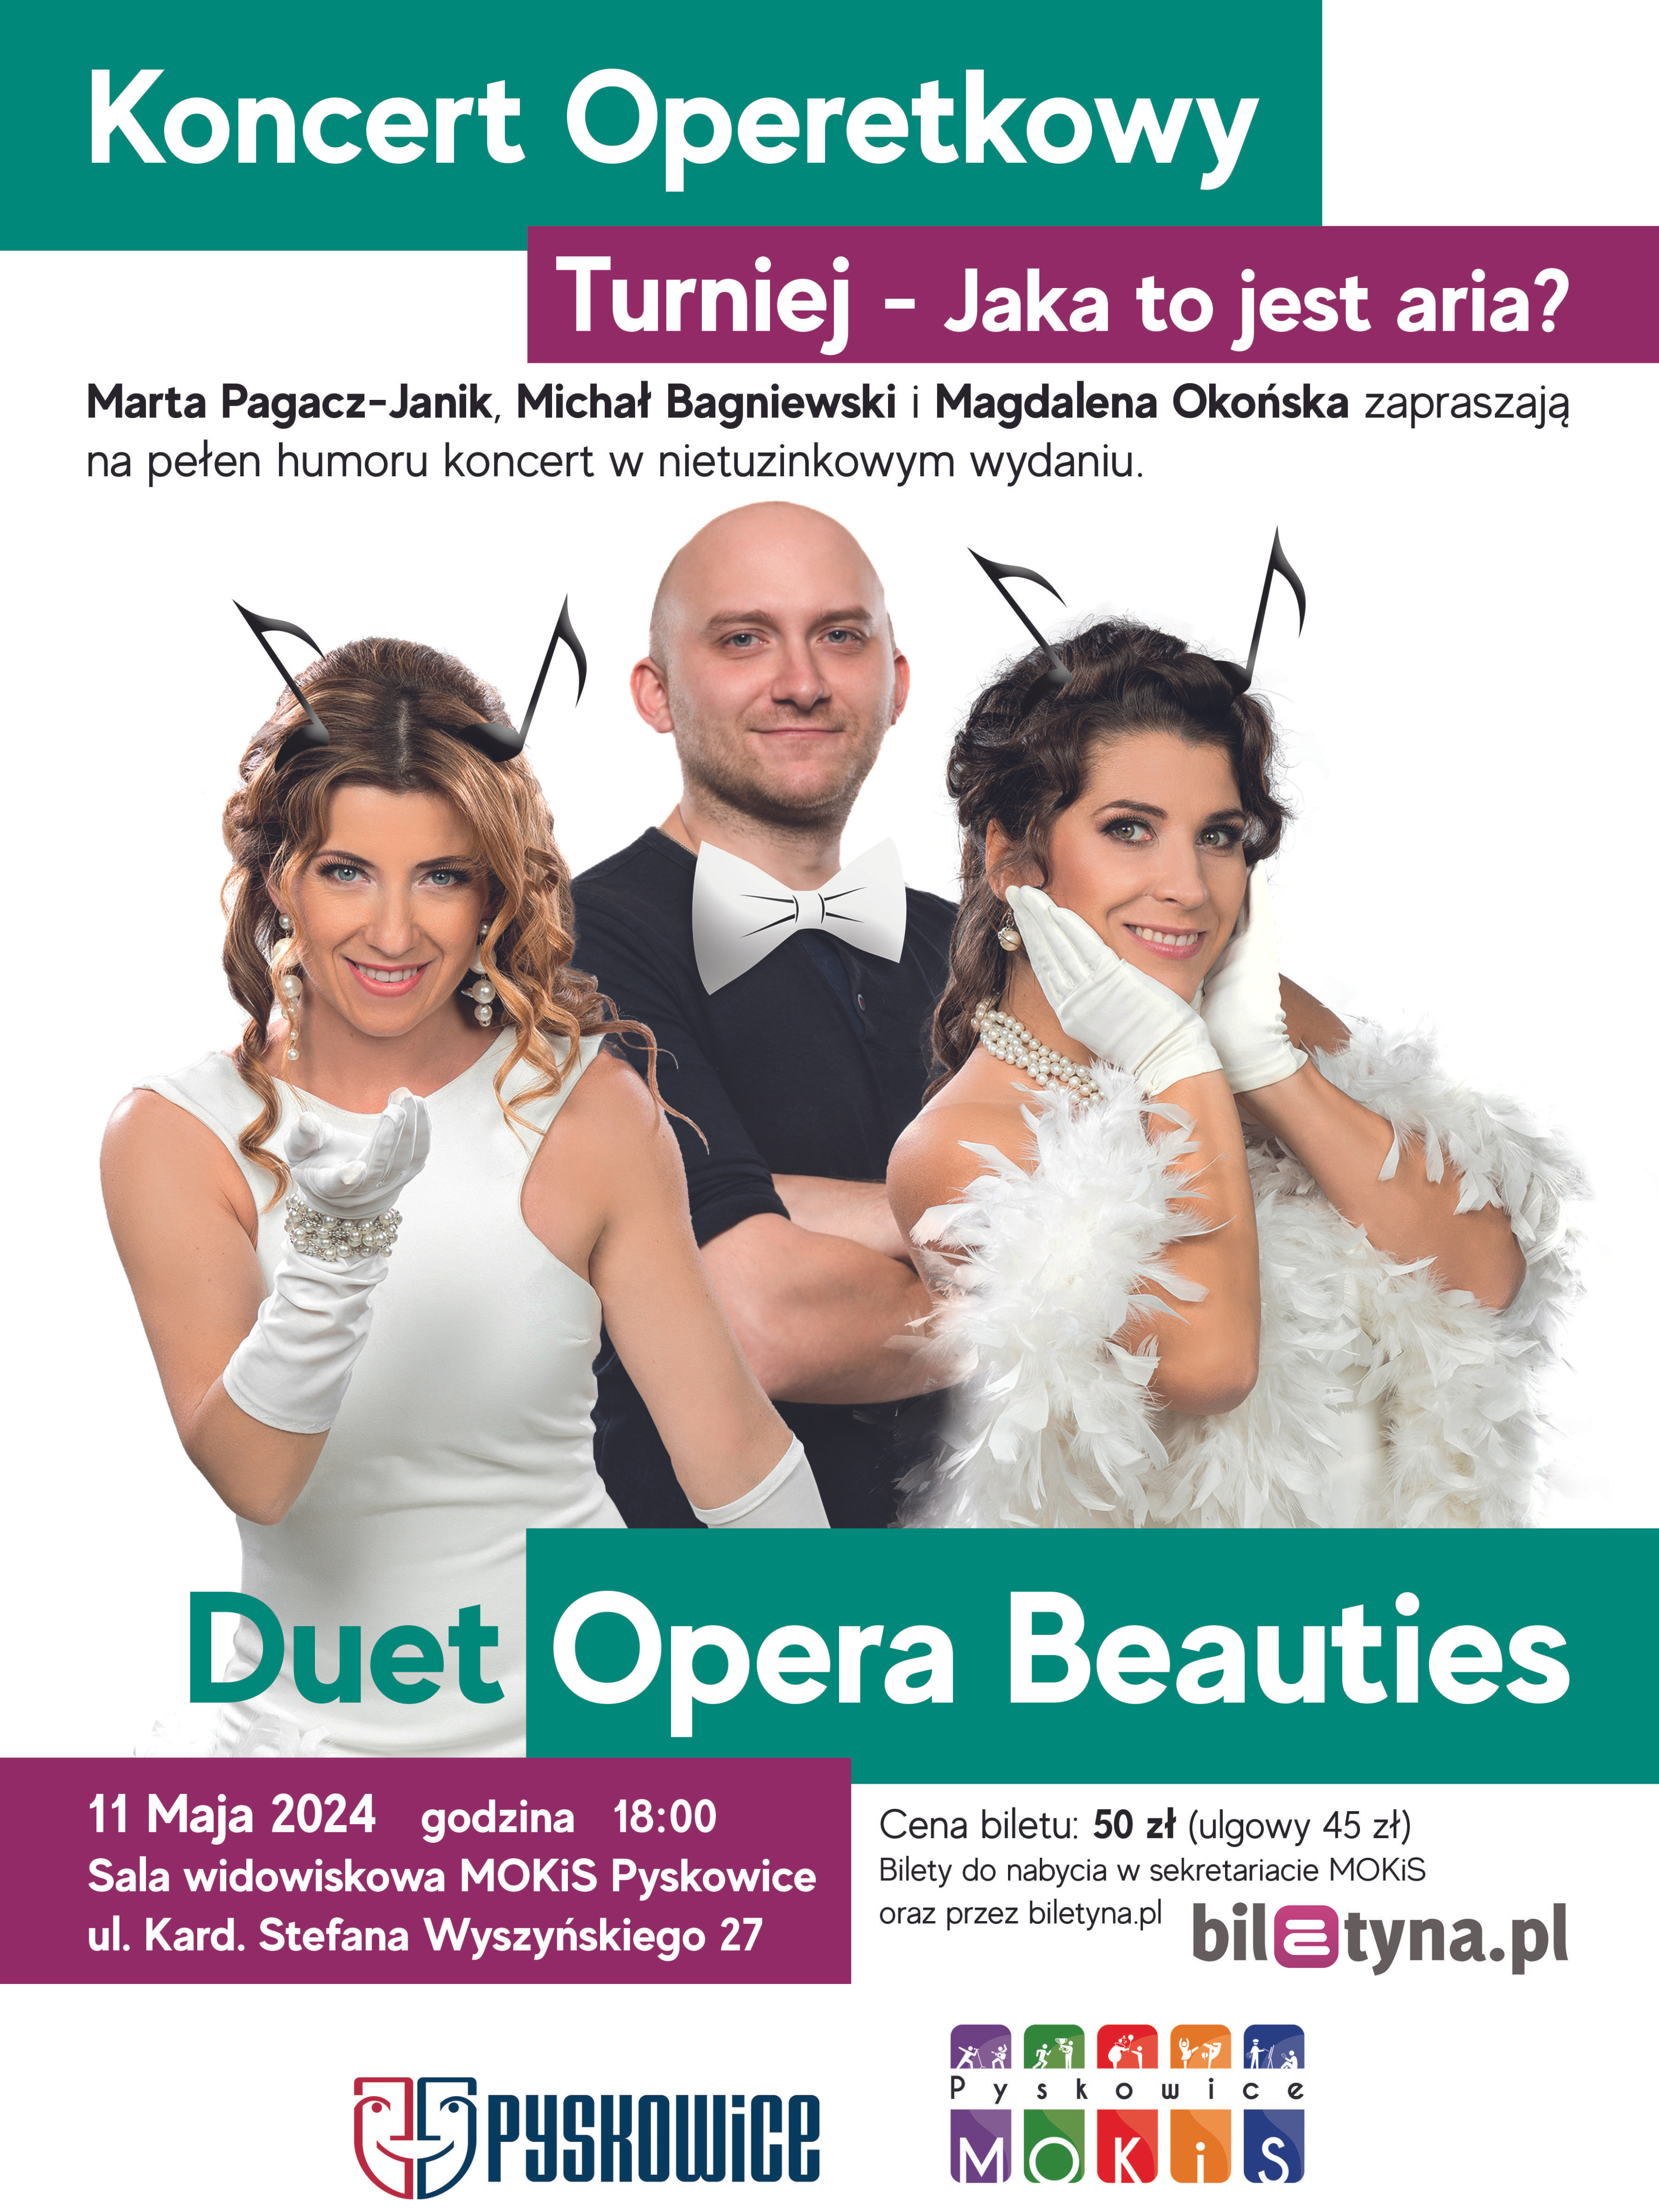 Plakat promujący koncert operetkowy Turniej - jaka to jest aria?